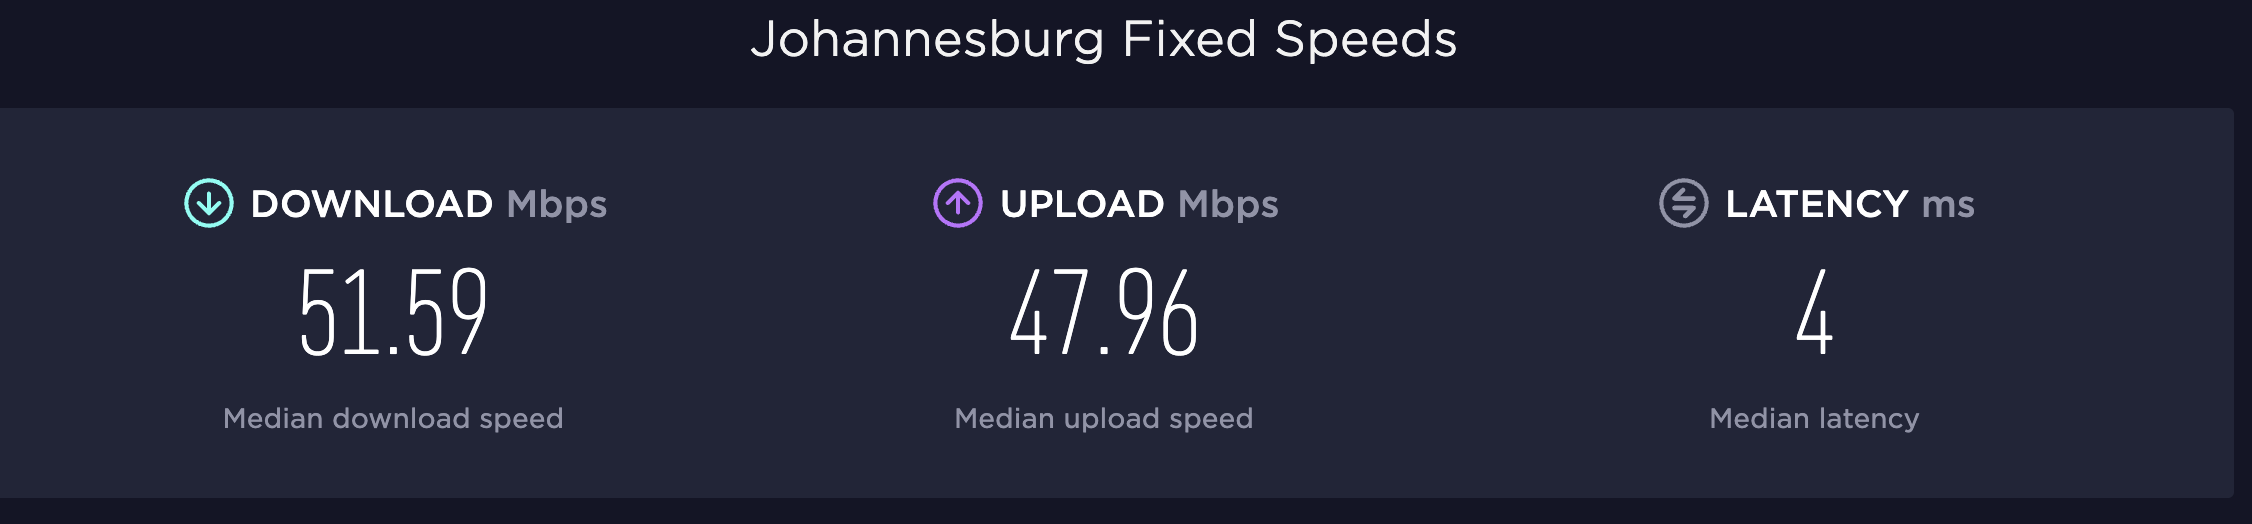 Johannesburg Fixed Internet Speeds